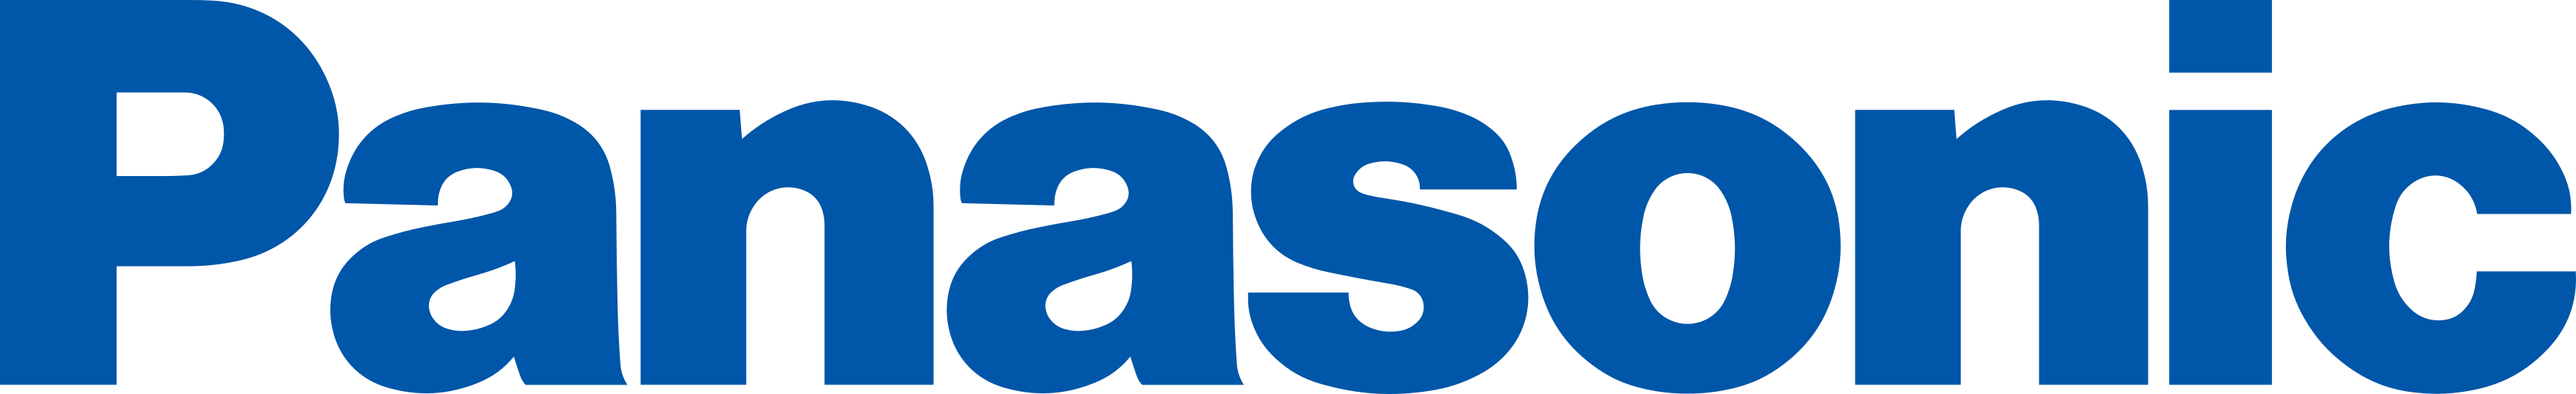 Panasonic logo